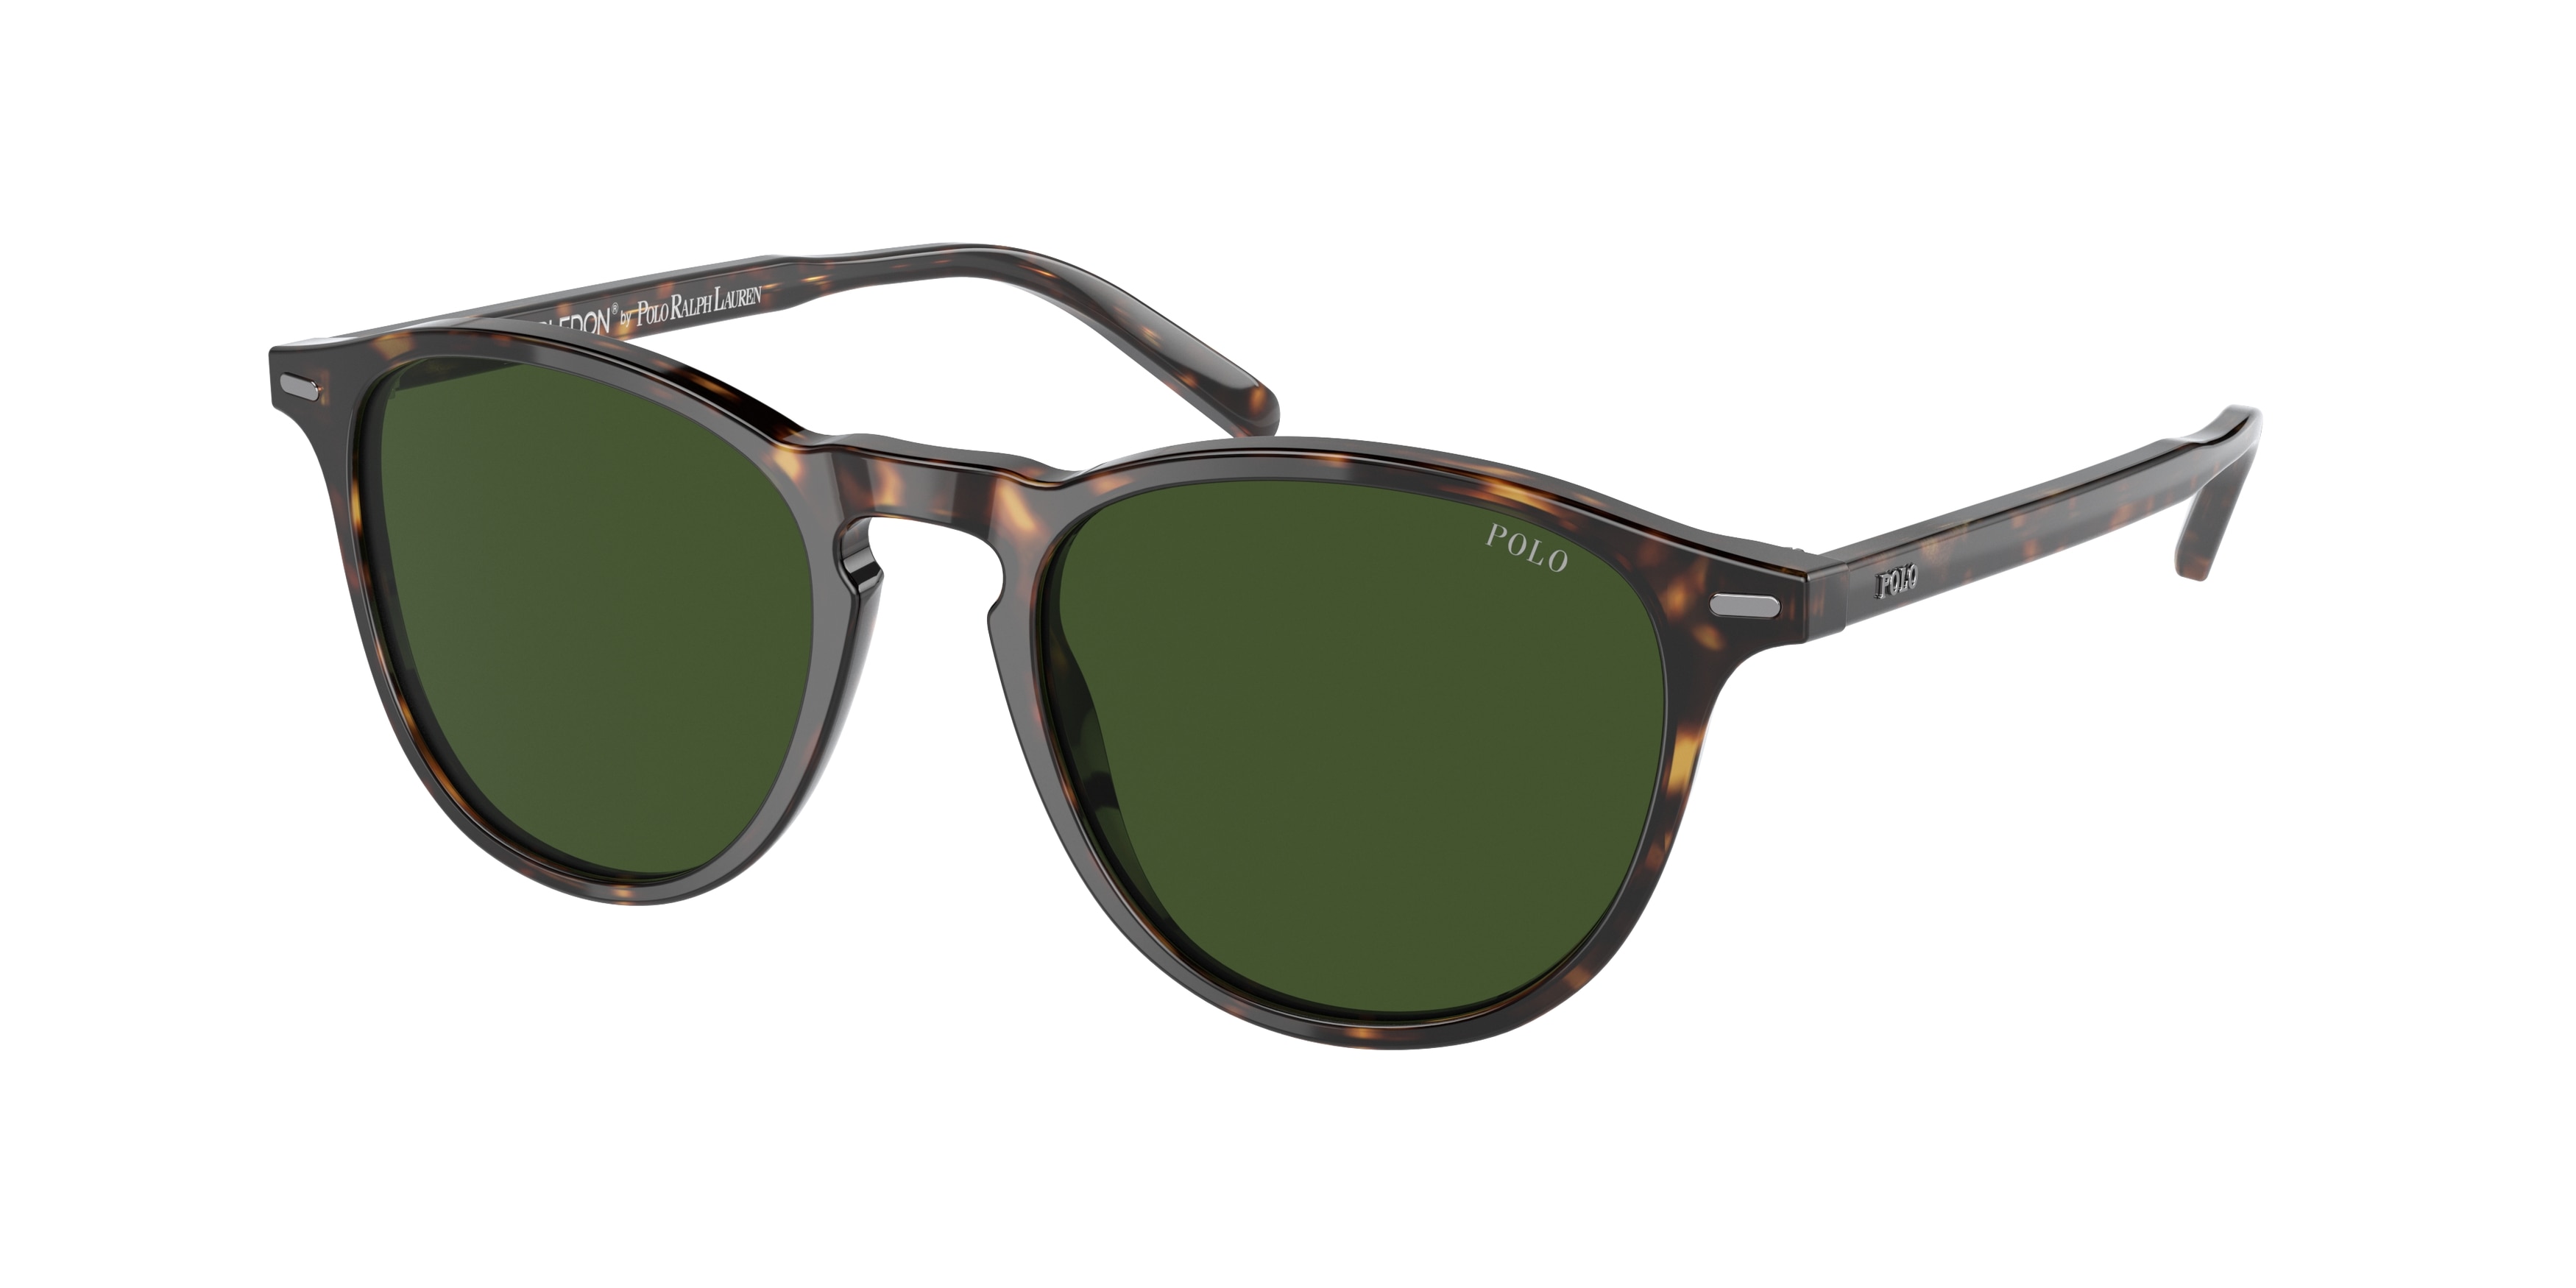 Polo Ralph Lauren 3041 Sunglasses | Polo ralph lauren, Ralph lauren,  Sunglasses